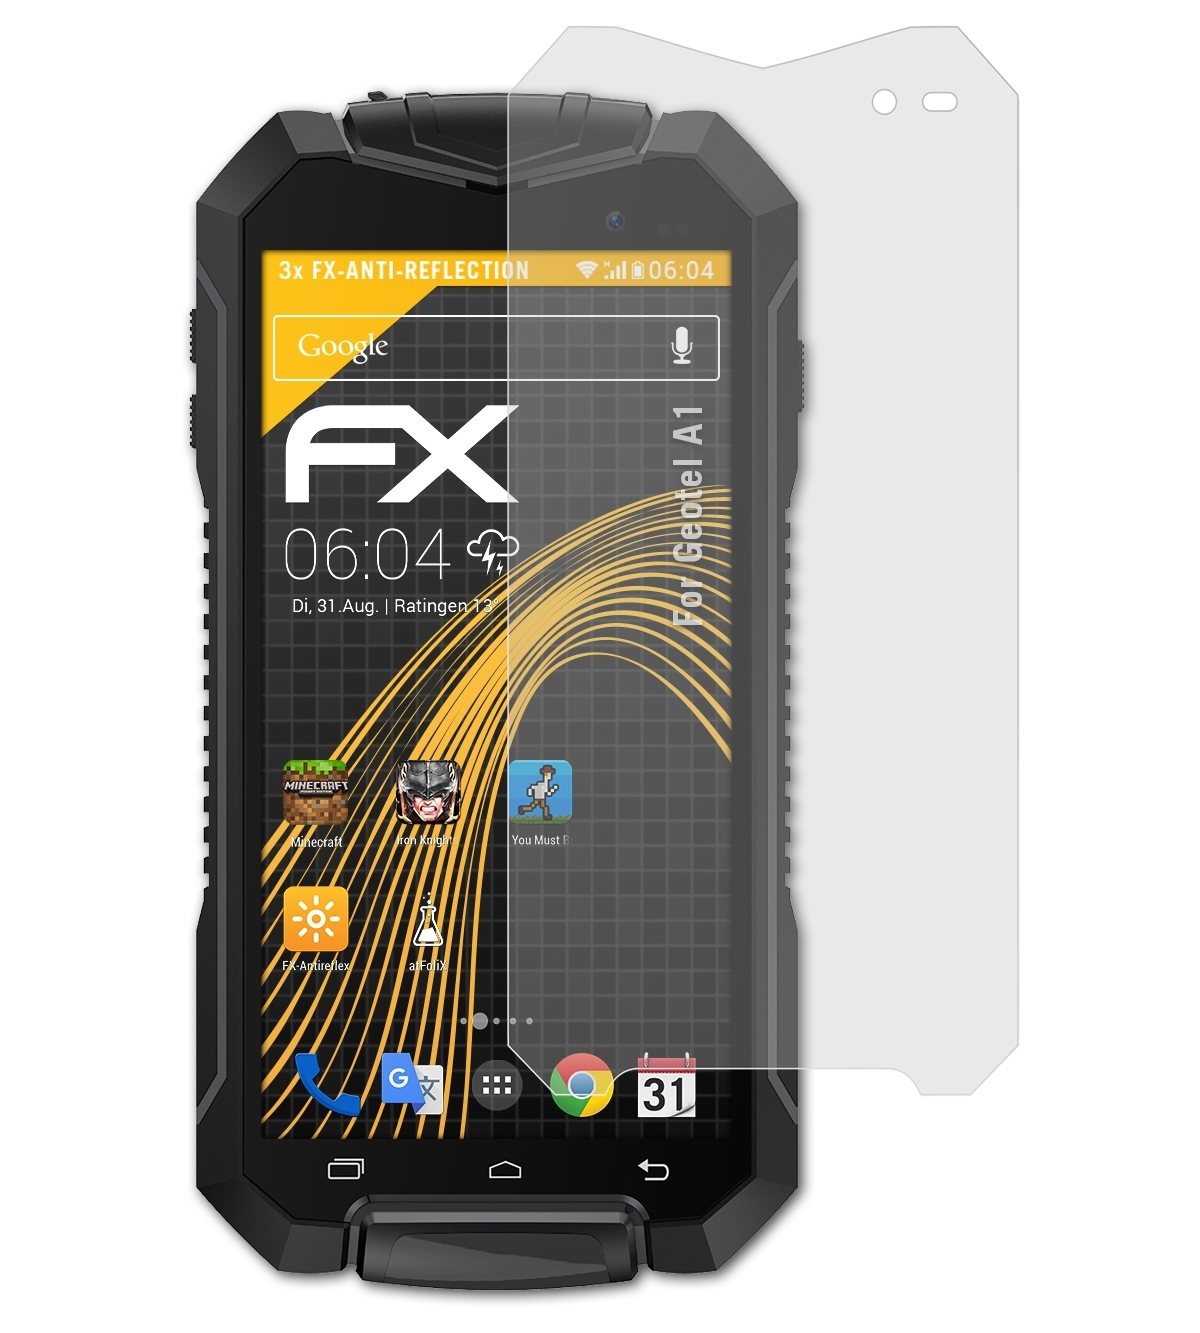 3x FX-Antireflex A1) ATFOLIX Geotel Displayschutz(für